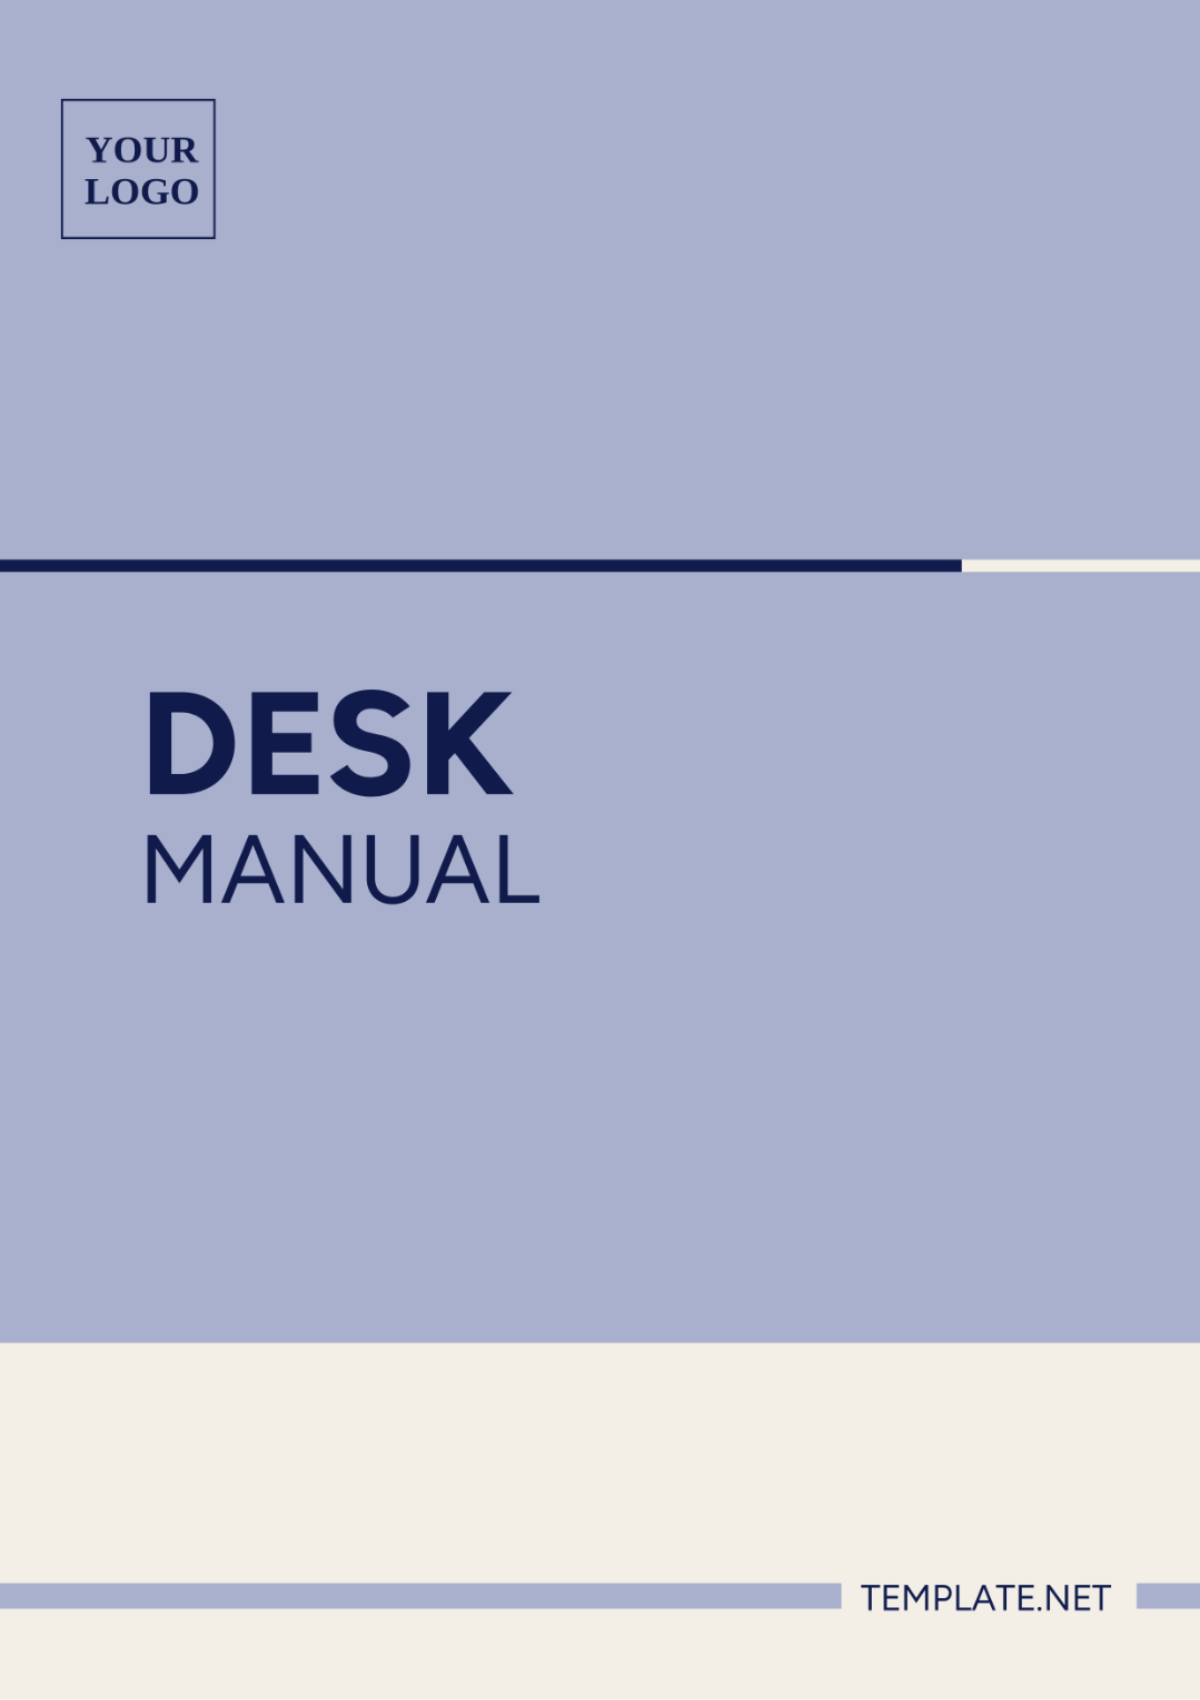 Desk Manual Template